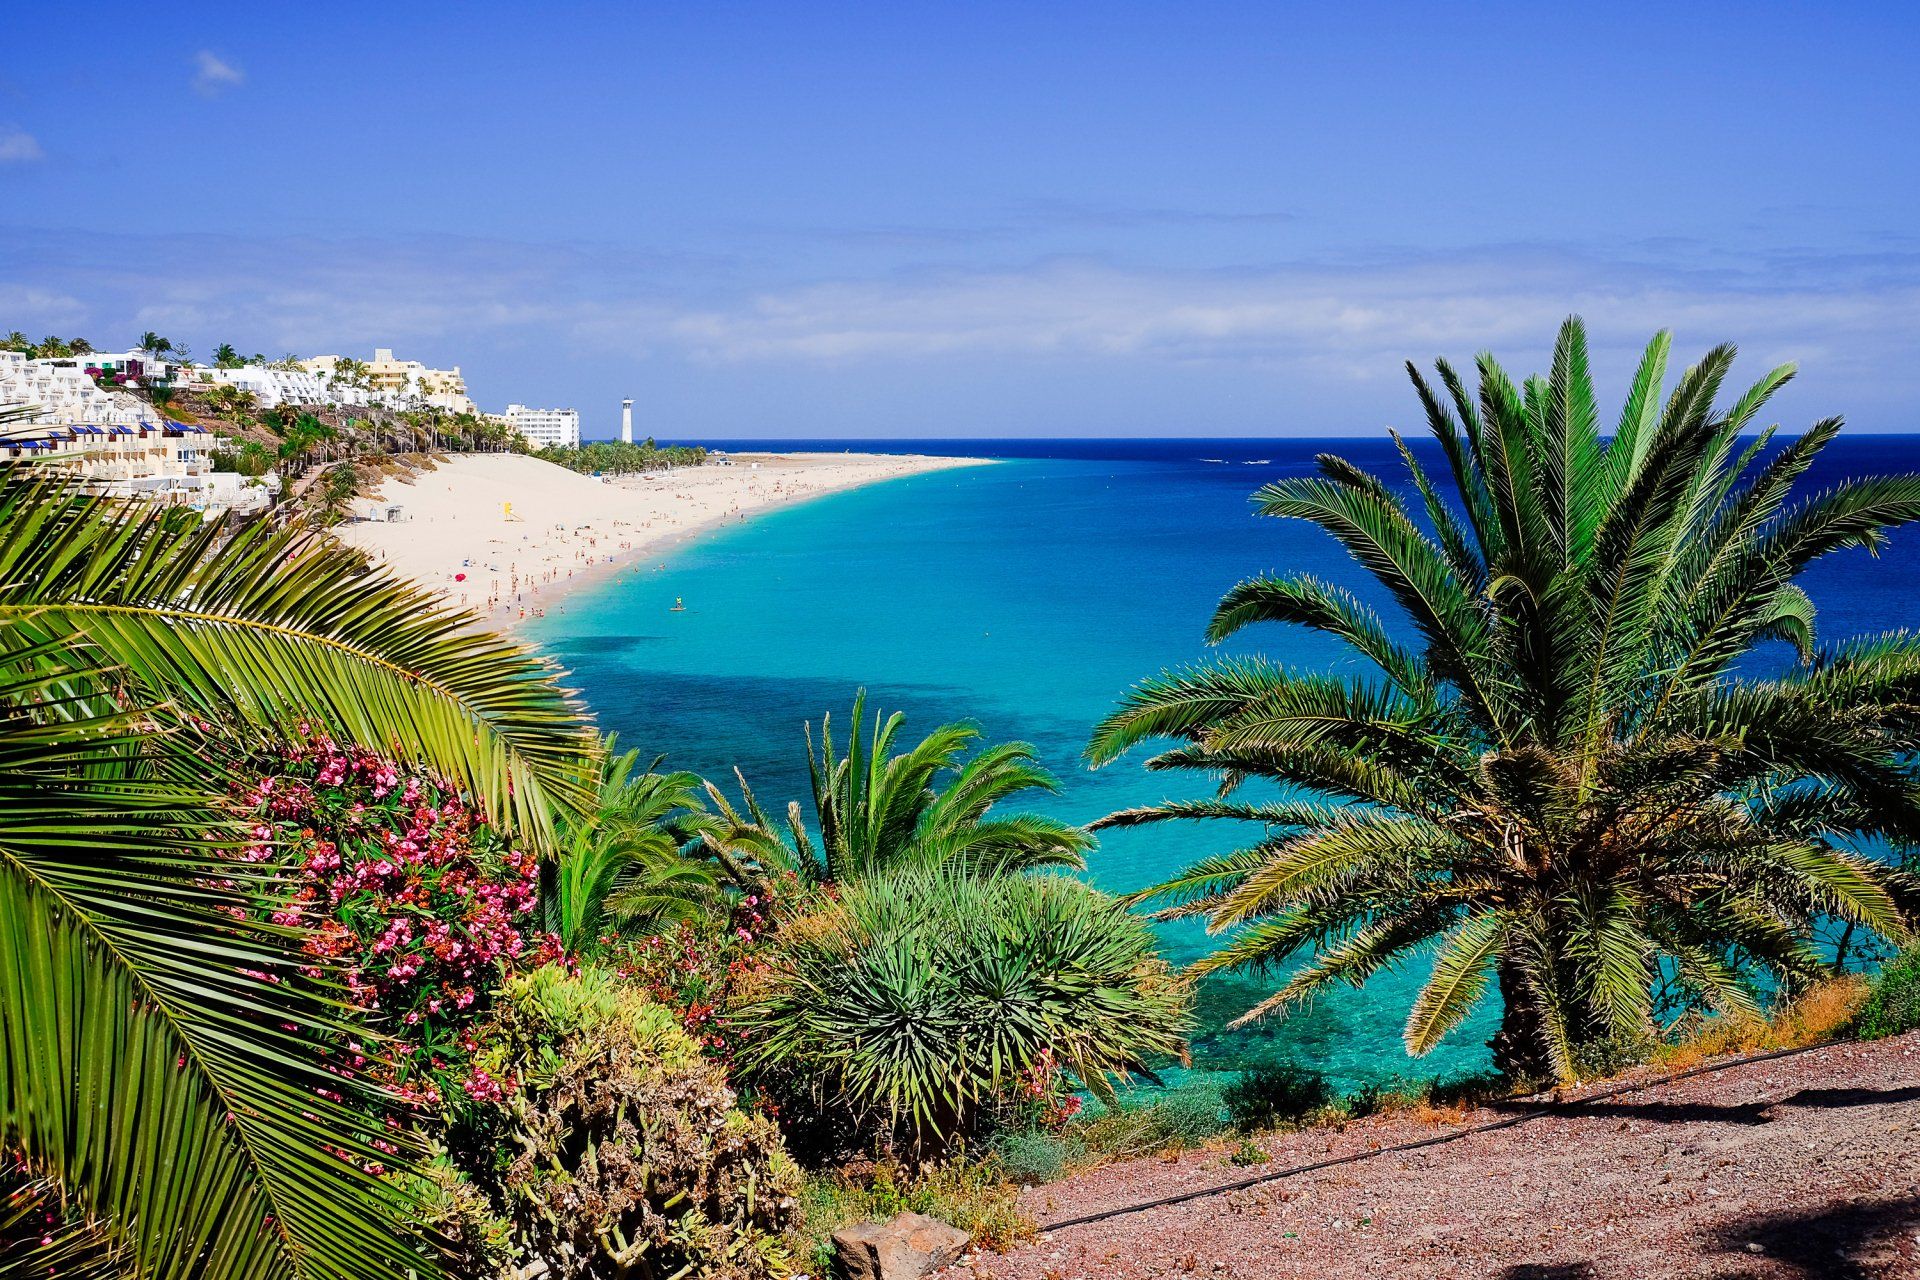 Holidays to Fuerteventura